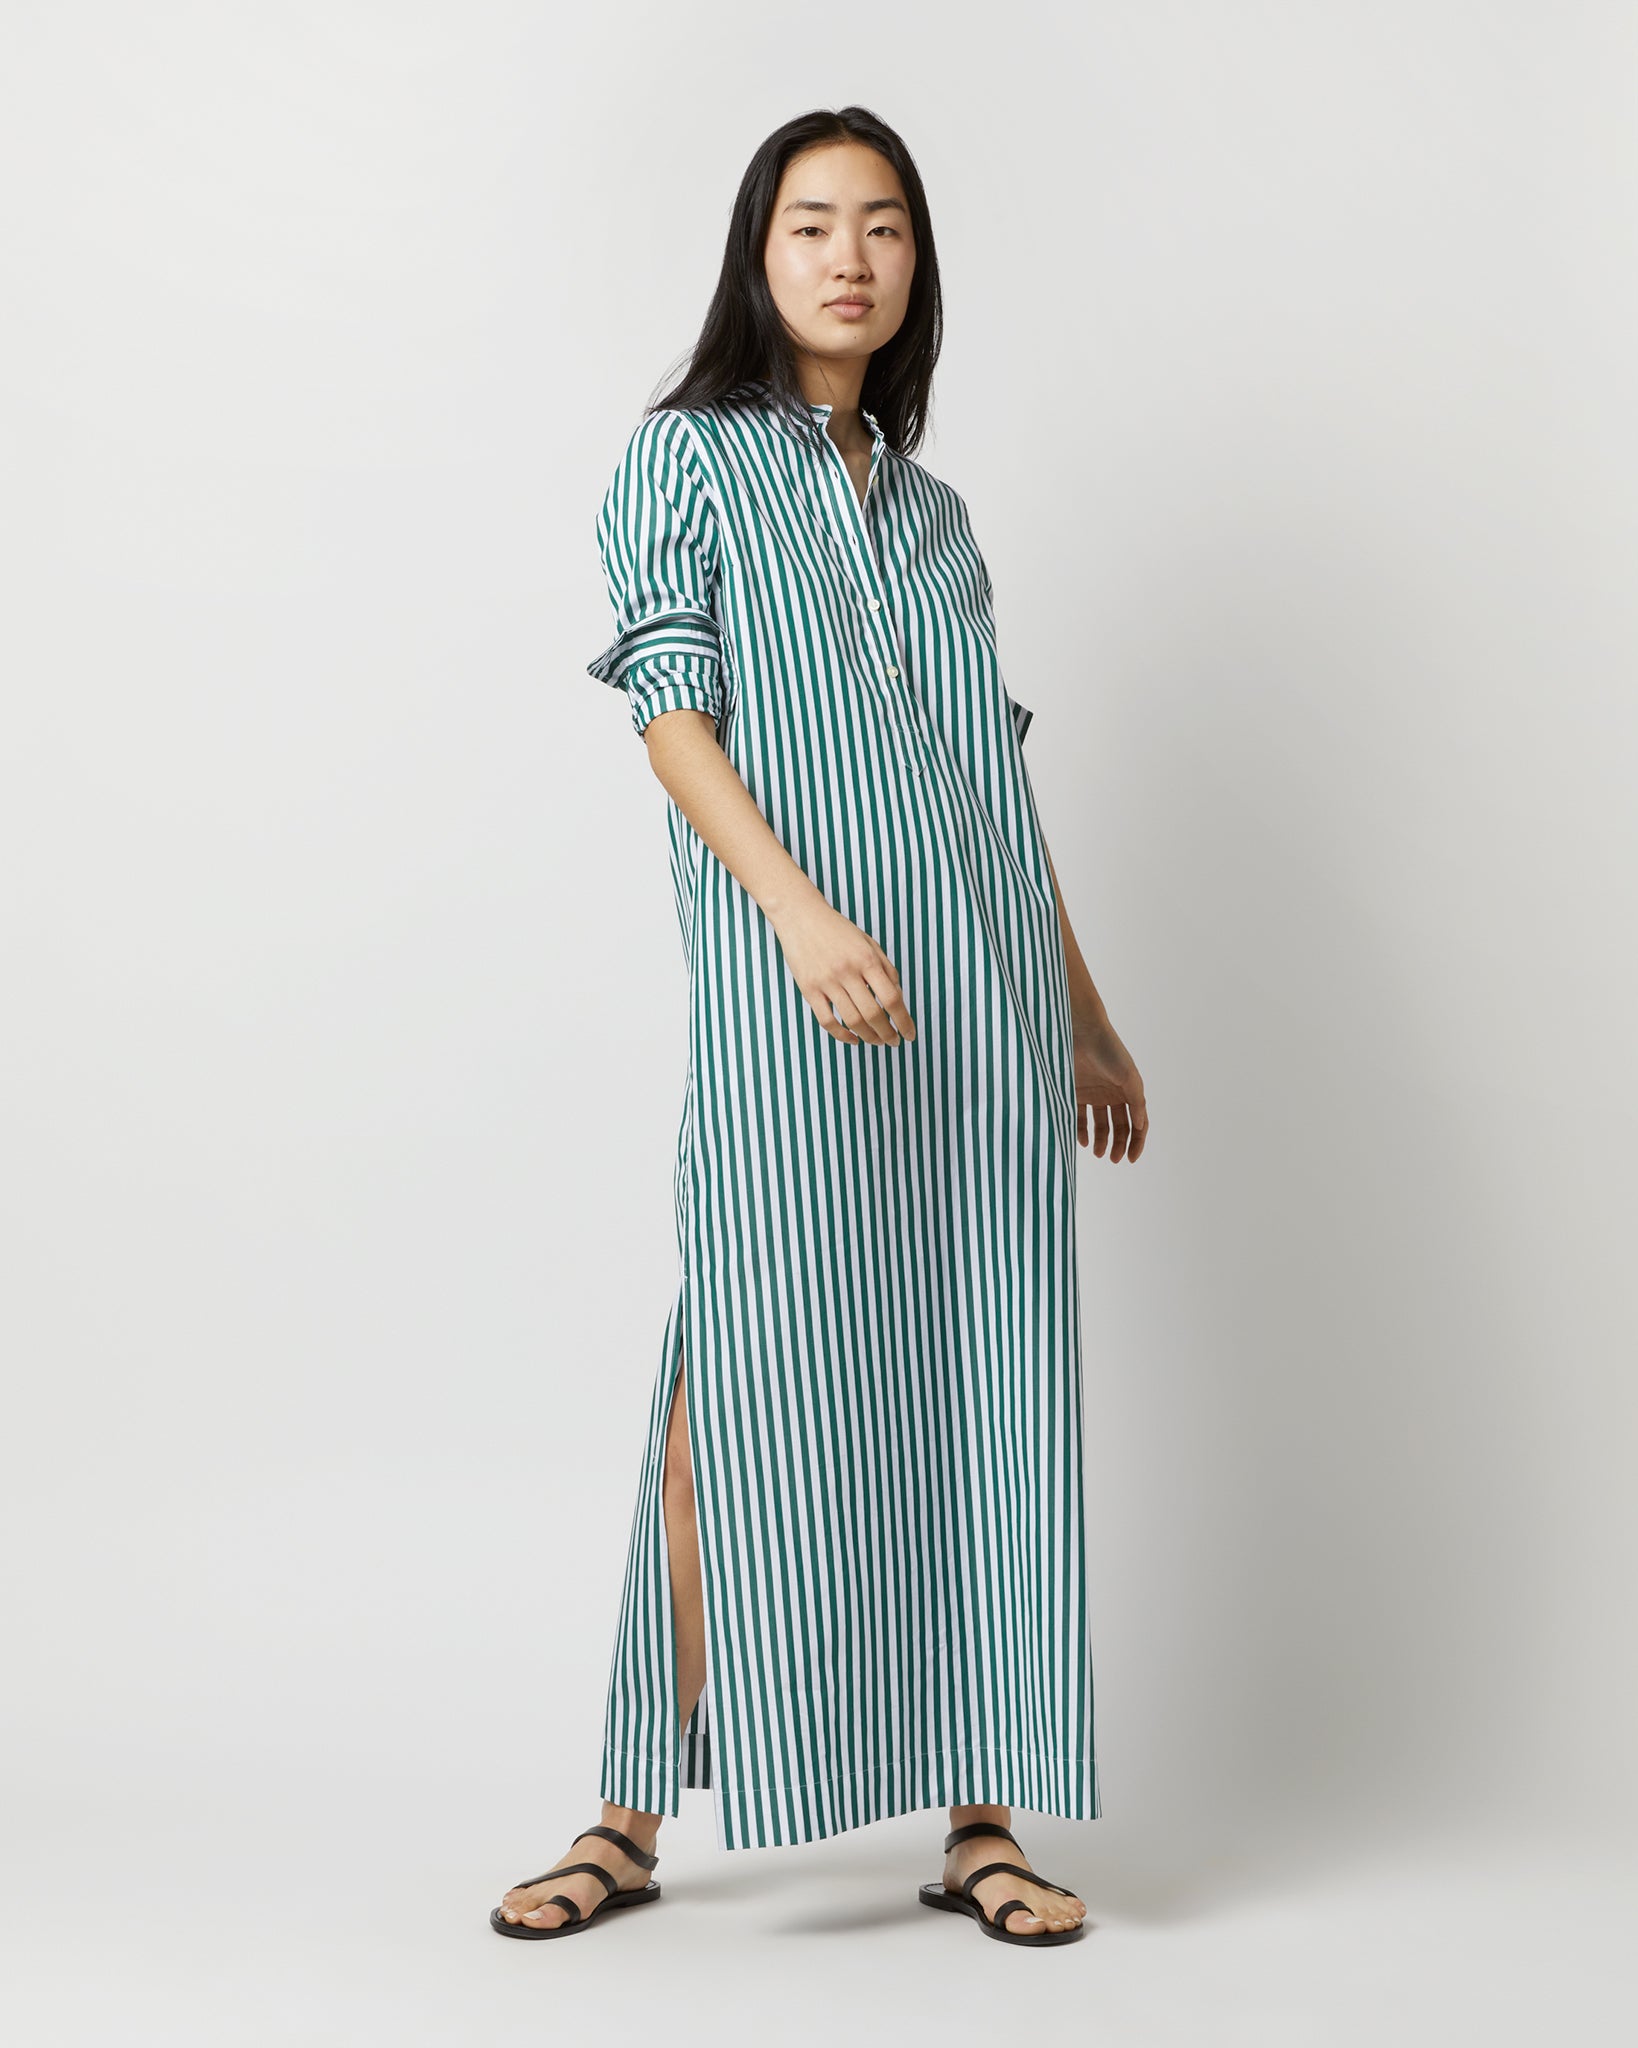 Mandarin Talitha Shirtdress in Green Awning Stripe Poplin